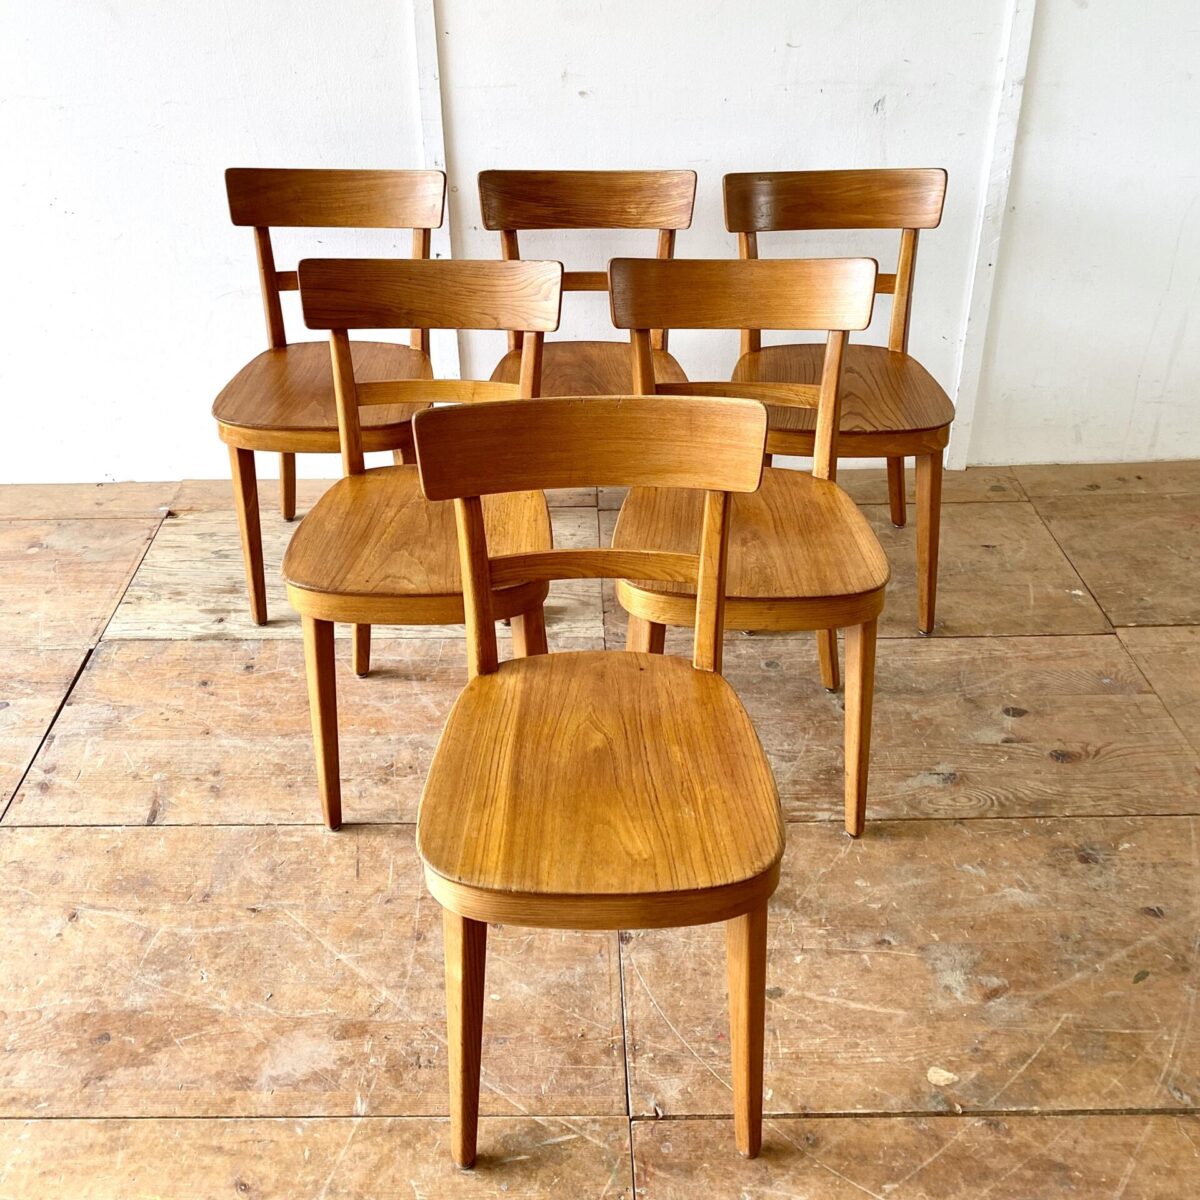 Deuxieme.shop swiss chairs. 9 Beizenstühle leicht restauriert, preis pro Stuhl. Im Vergleich zu den meisten anderen Beizenstühlen sind diese Stühle aus Ulmen Holz, und die Sitzfläche ist ebenfalls aus Vollholz. Technisch in stabilem Zustand, die Hinterbeine wurden mal neu durchgehend verschraubt. 